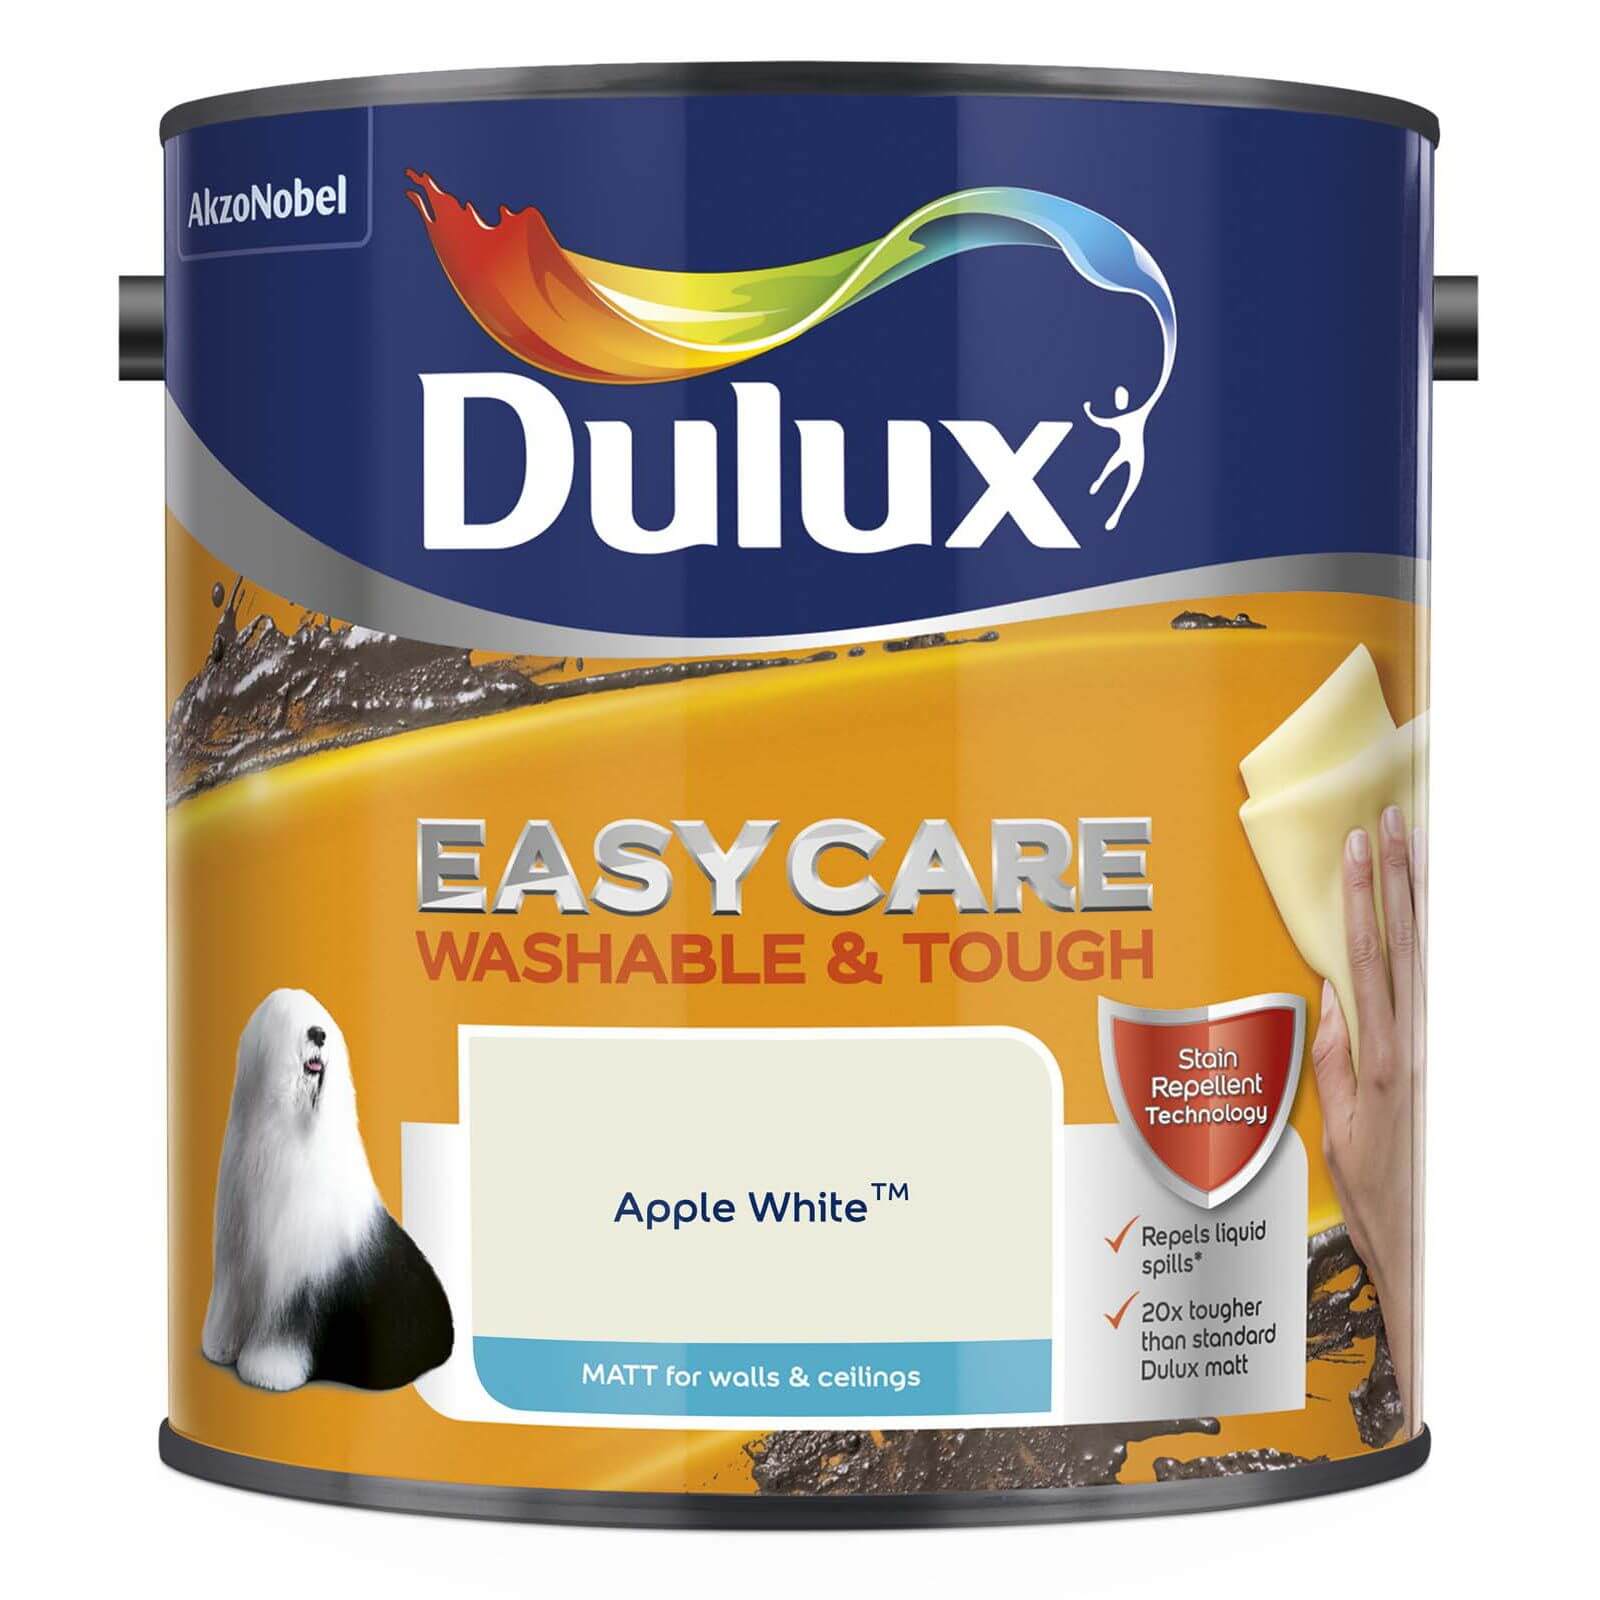 Dulux Easycare Washable & Tough Matt Paint Apple White - 2.5L